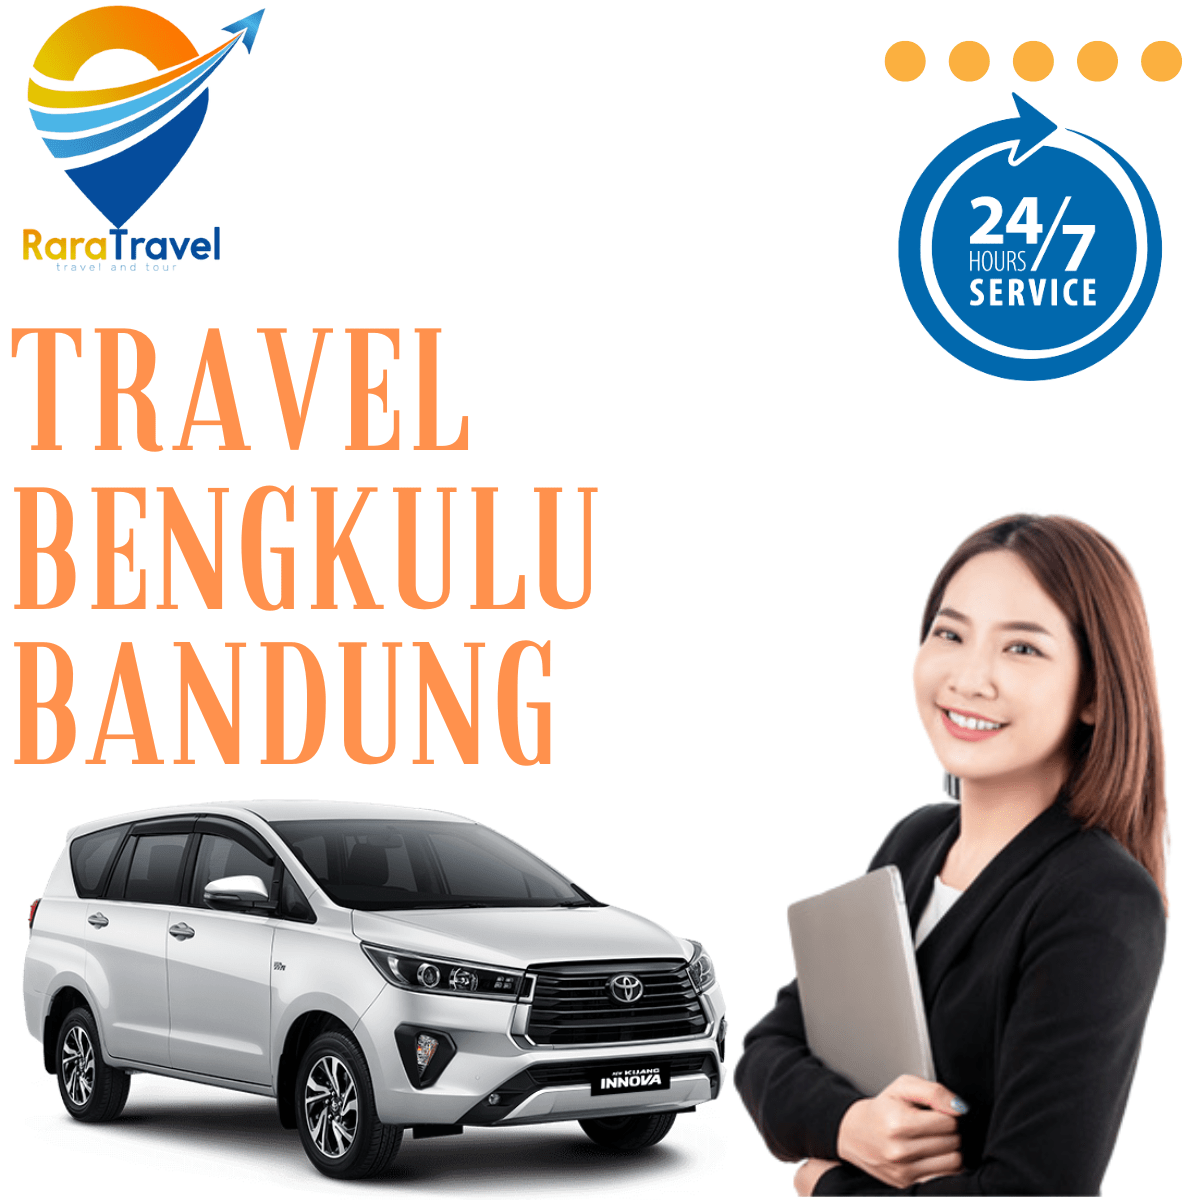 Travel Bengkulu Bandung Hiace Murah - RARATRAVEL.ID